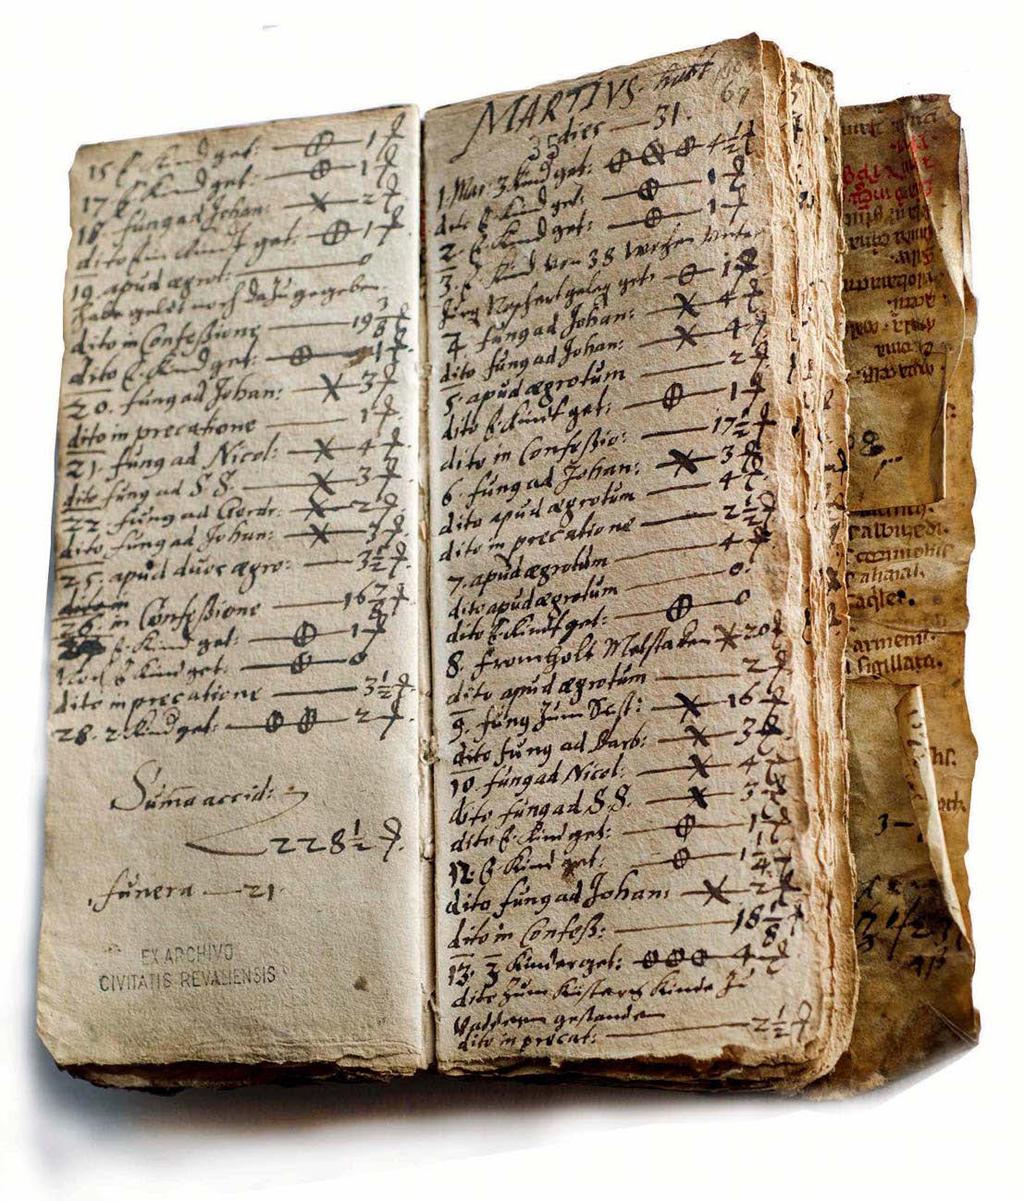 ARHIIVI AARE Pühavaimu kiriku abiõpetaja Georg Mülleri sissetulekuteraamat FOTOD: VALLO KRUUSER Georg Mülleri ülestähendused 1603.